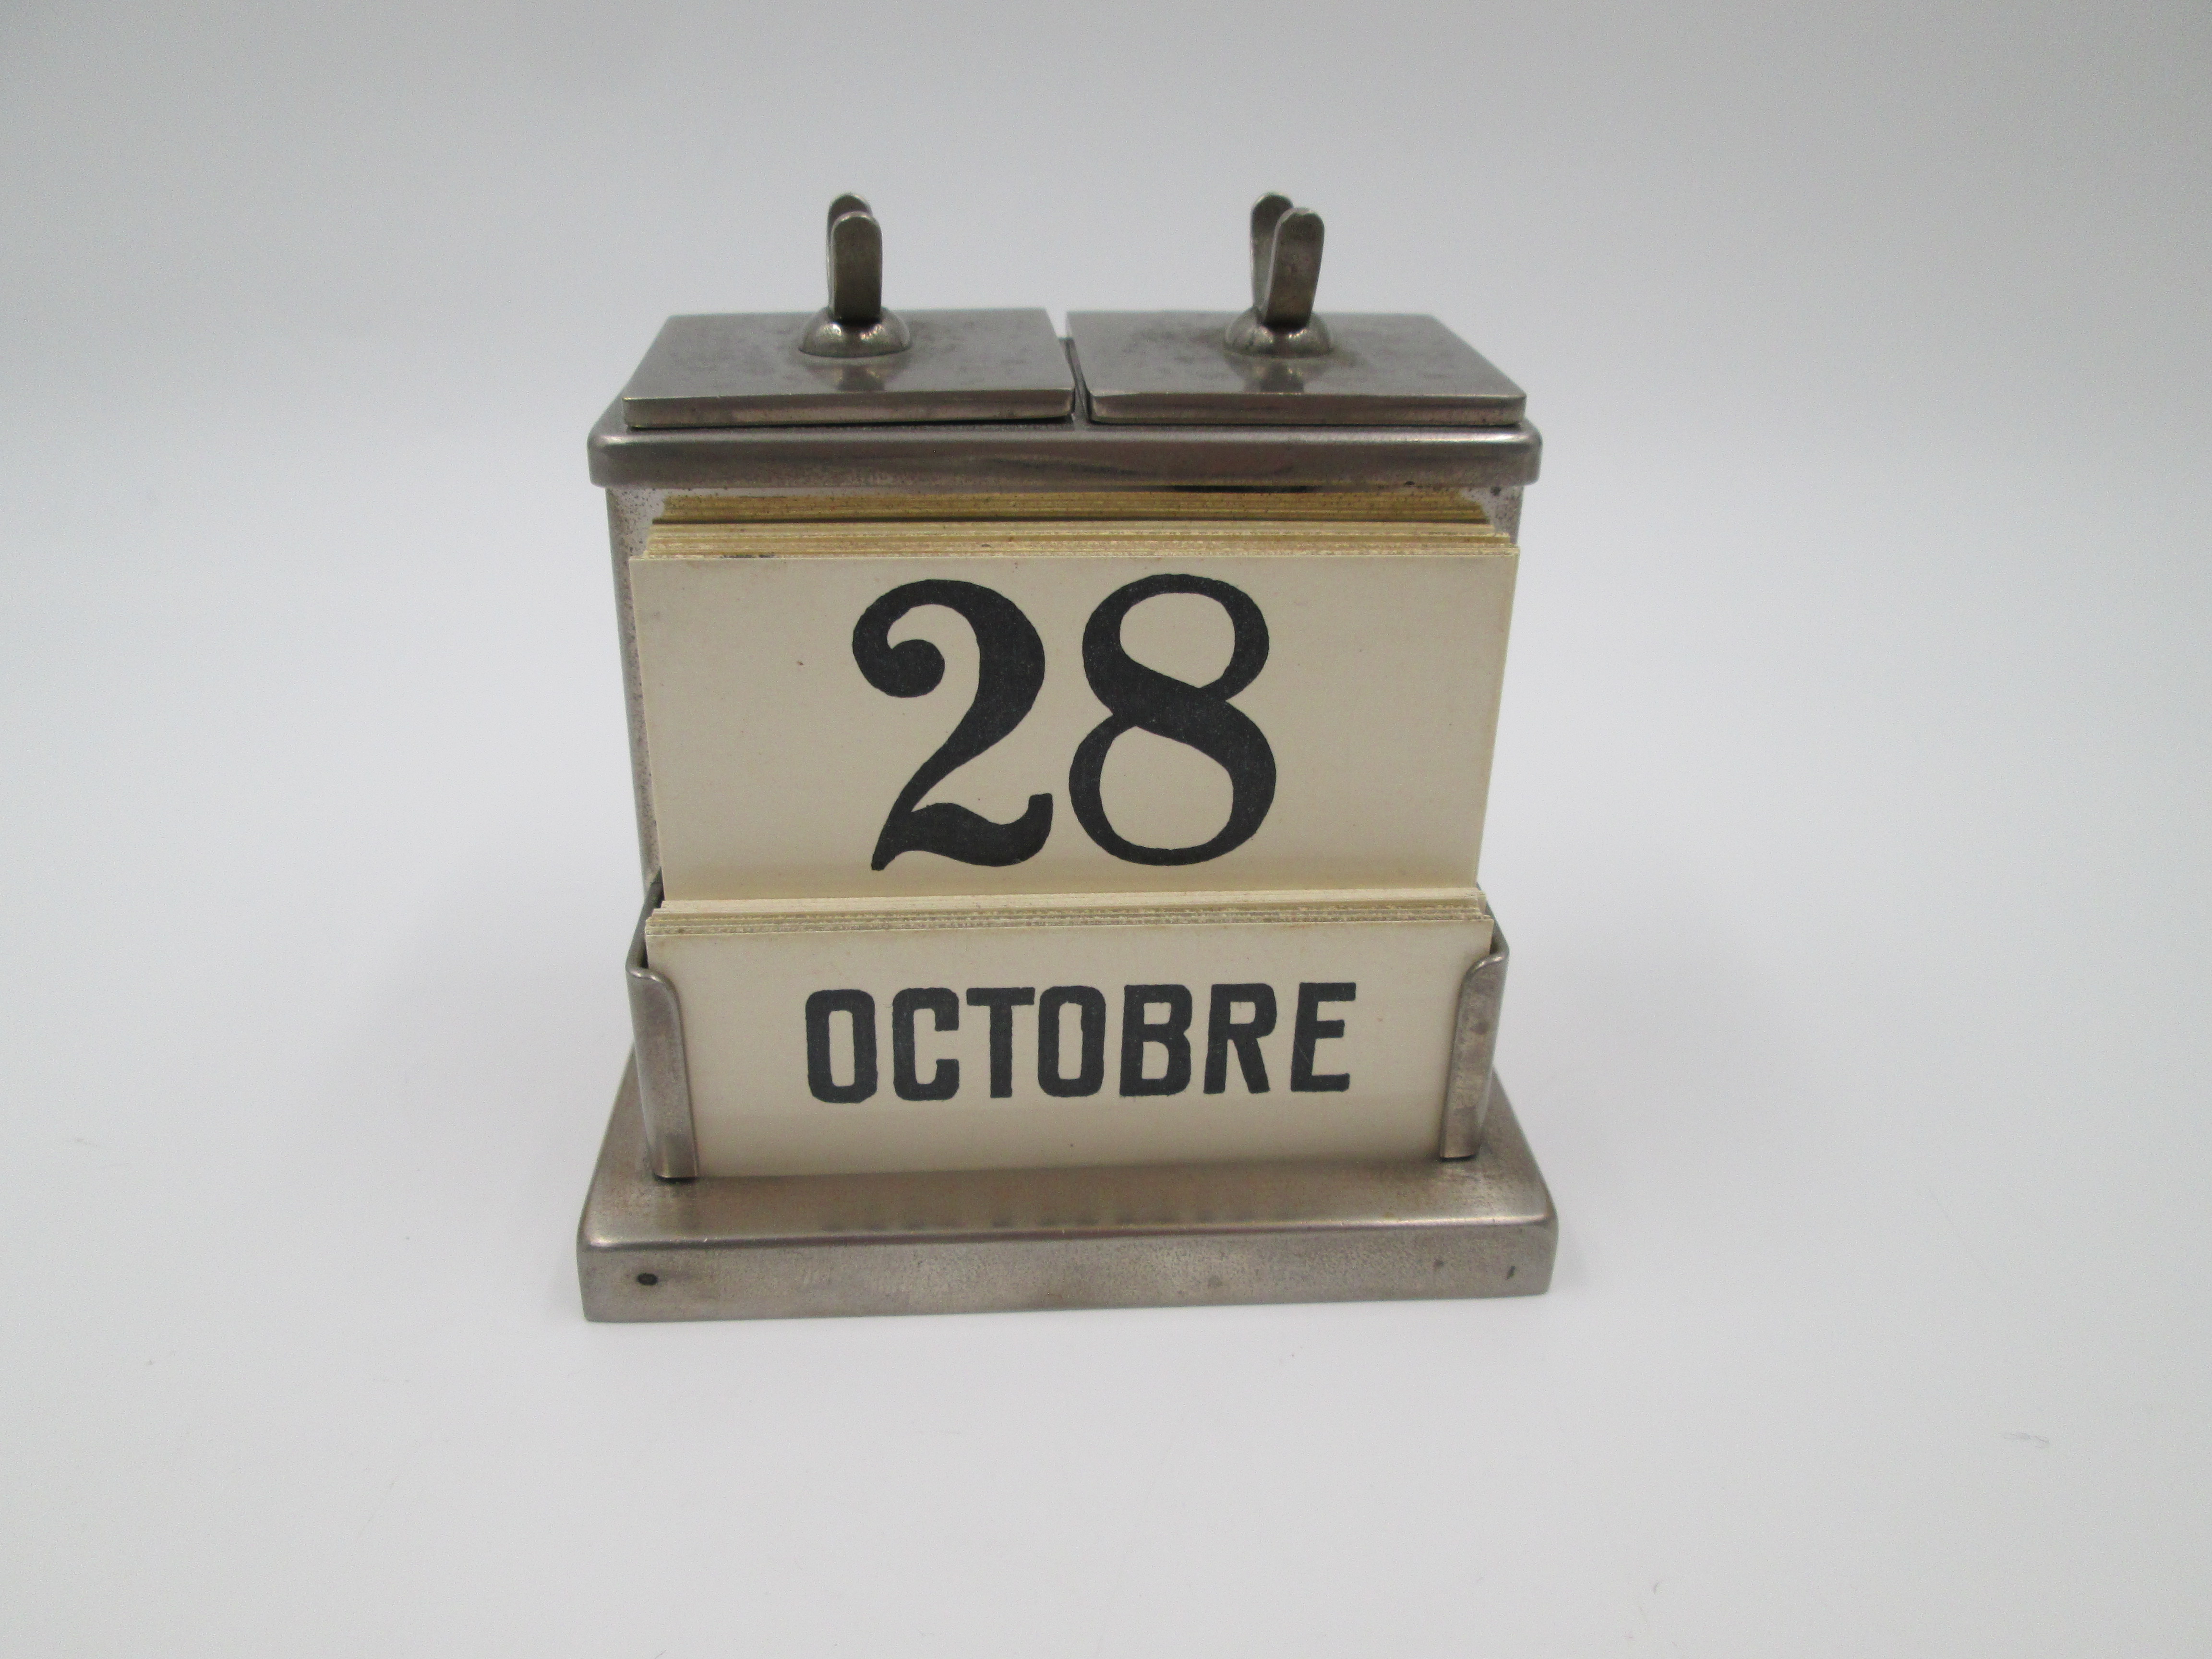  Calendario perpetuo antiguo : Productos de Oficina